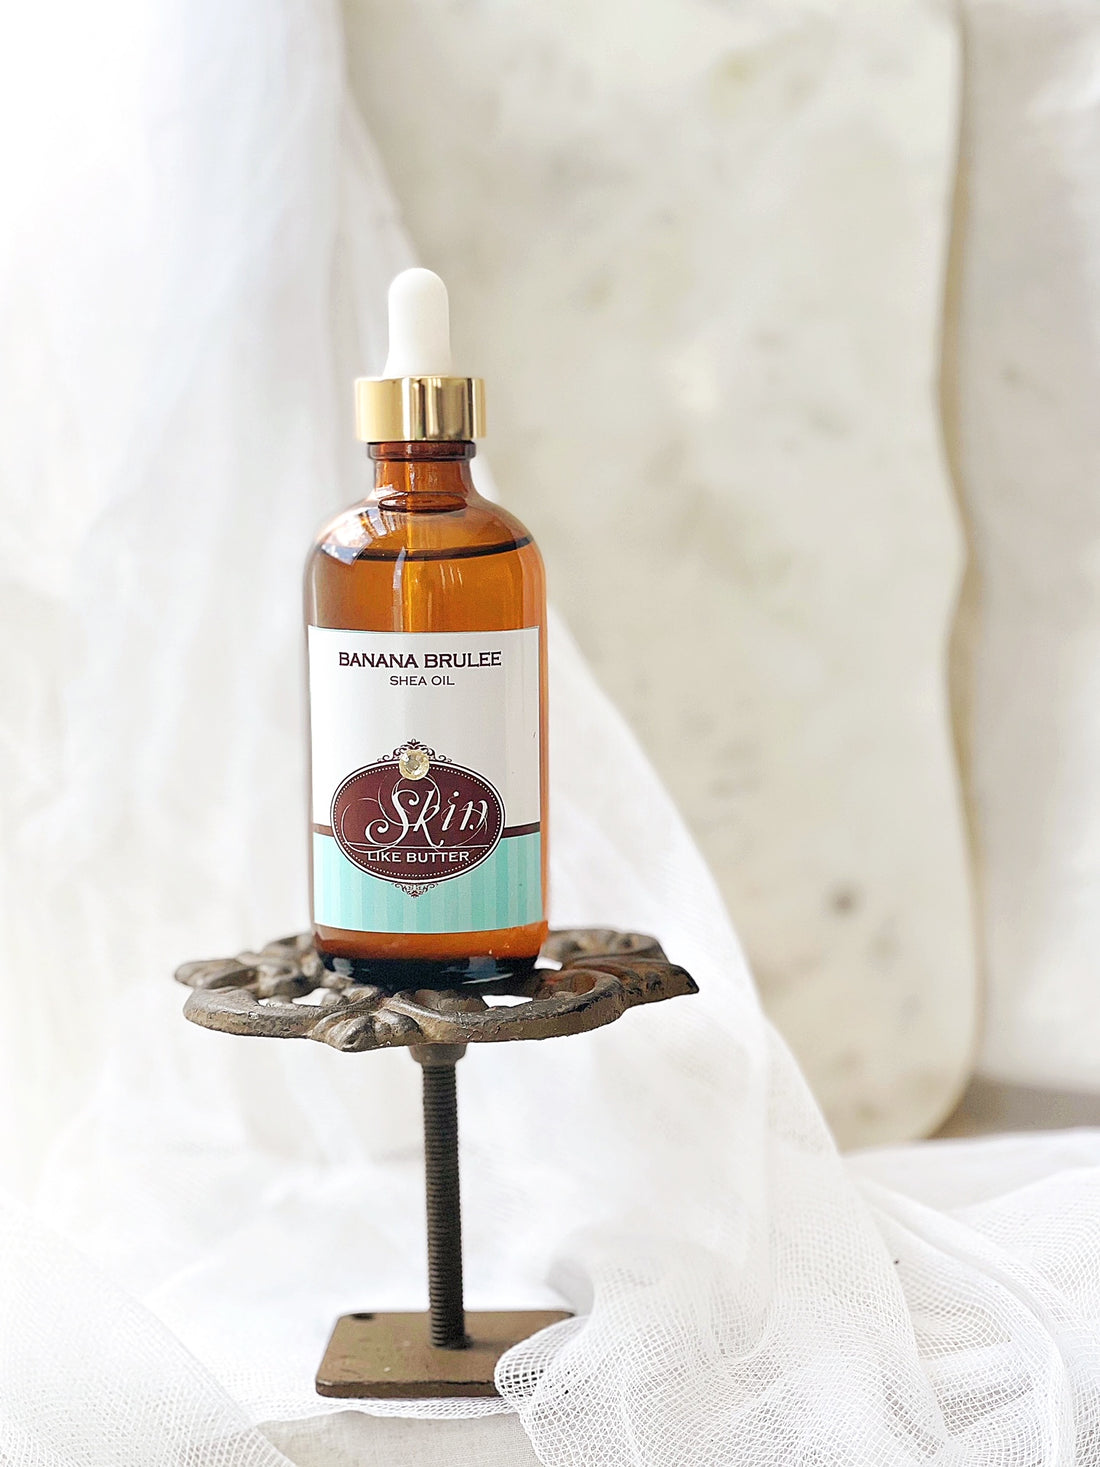 BANANA BRULEE- Scented Shea Body Oil - 4 oz bottles, highly moisturizing